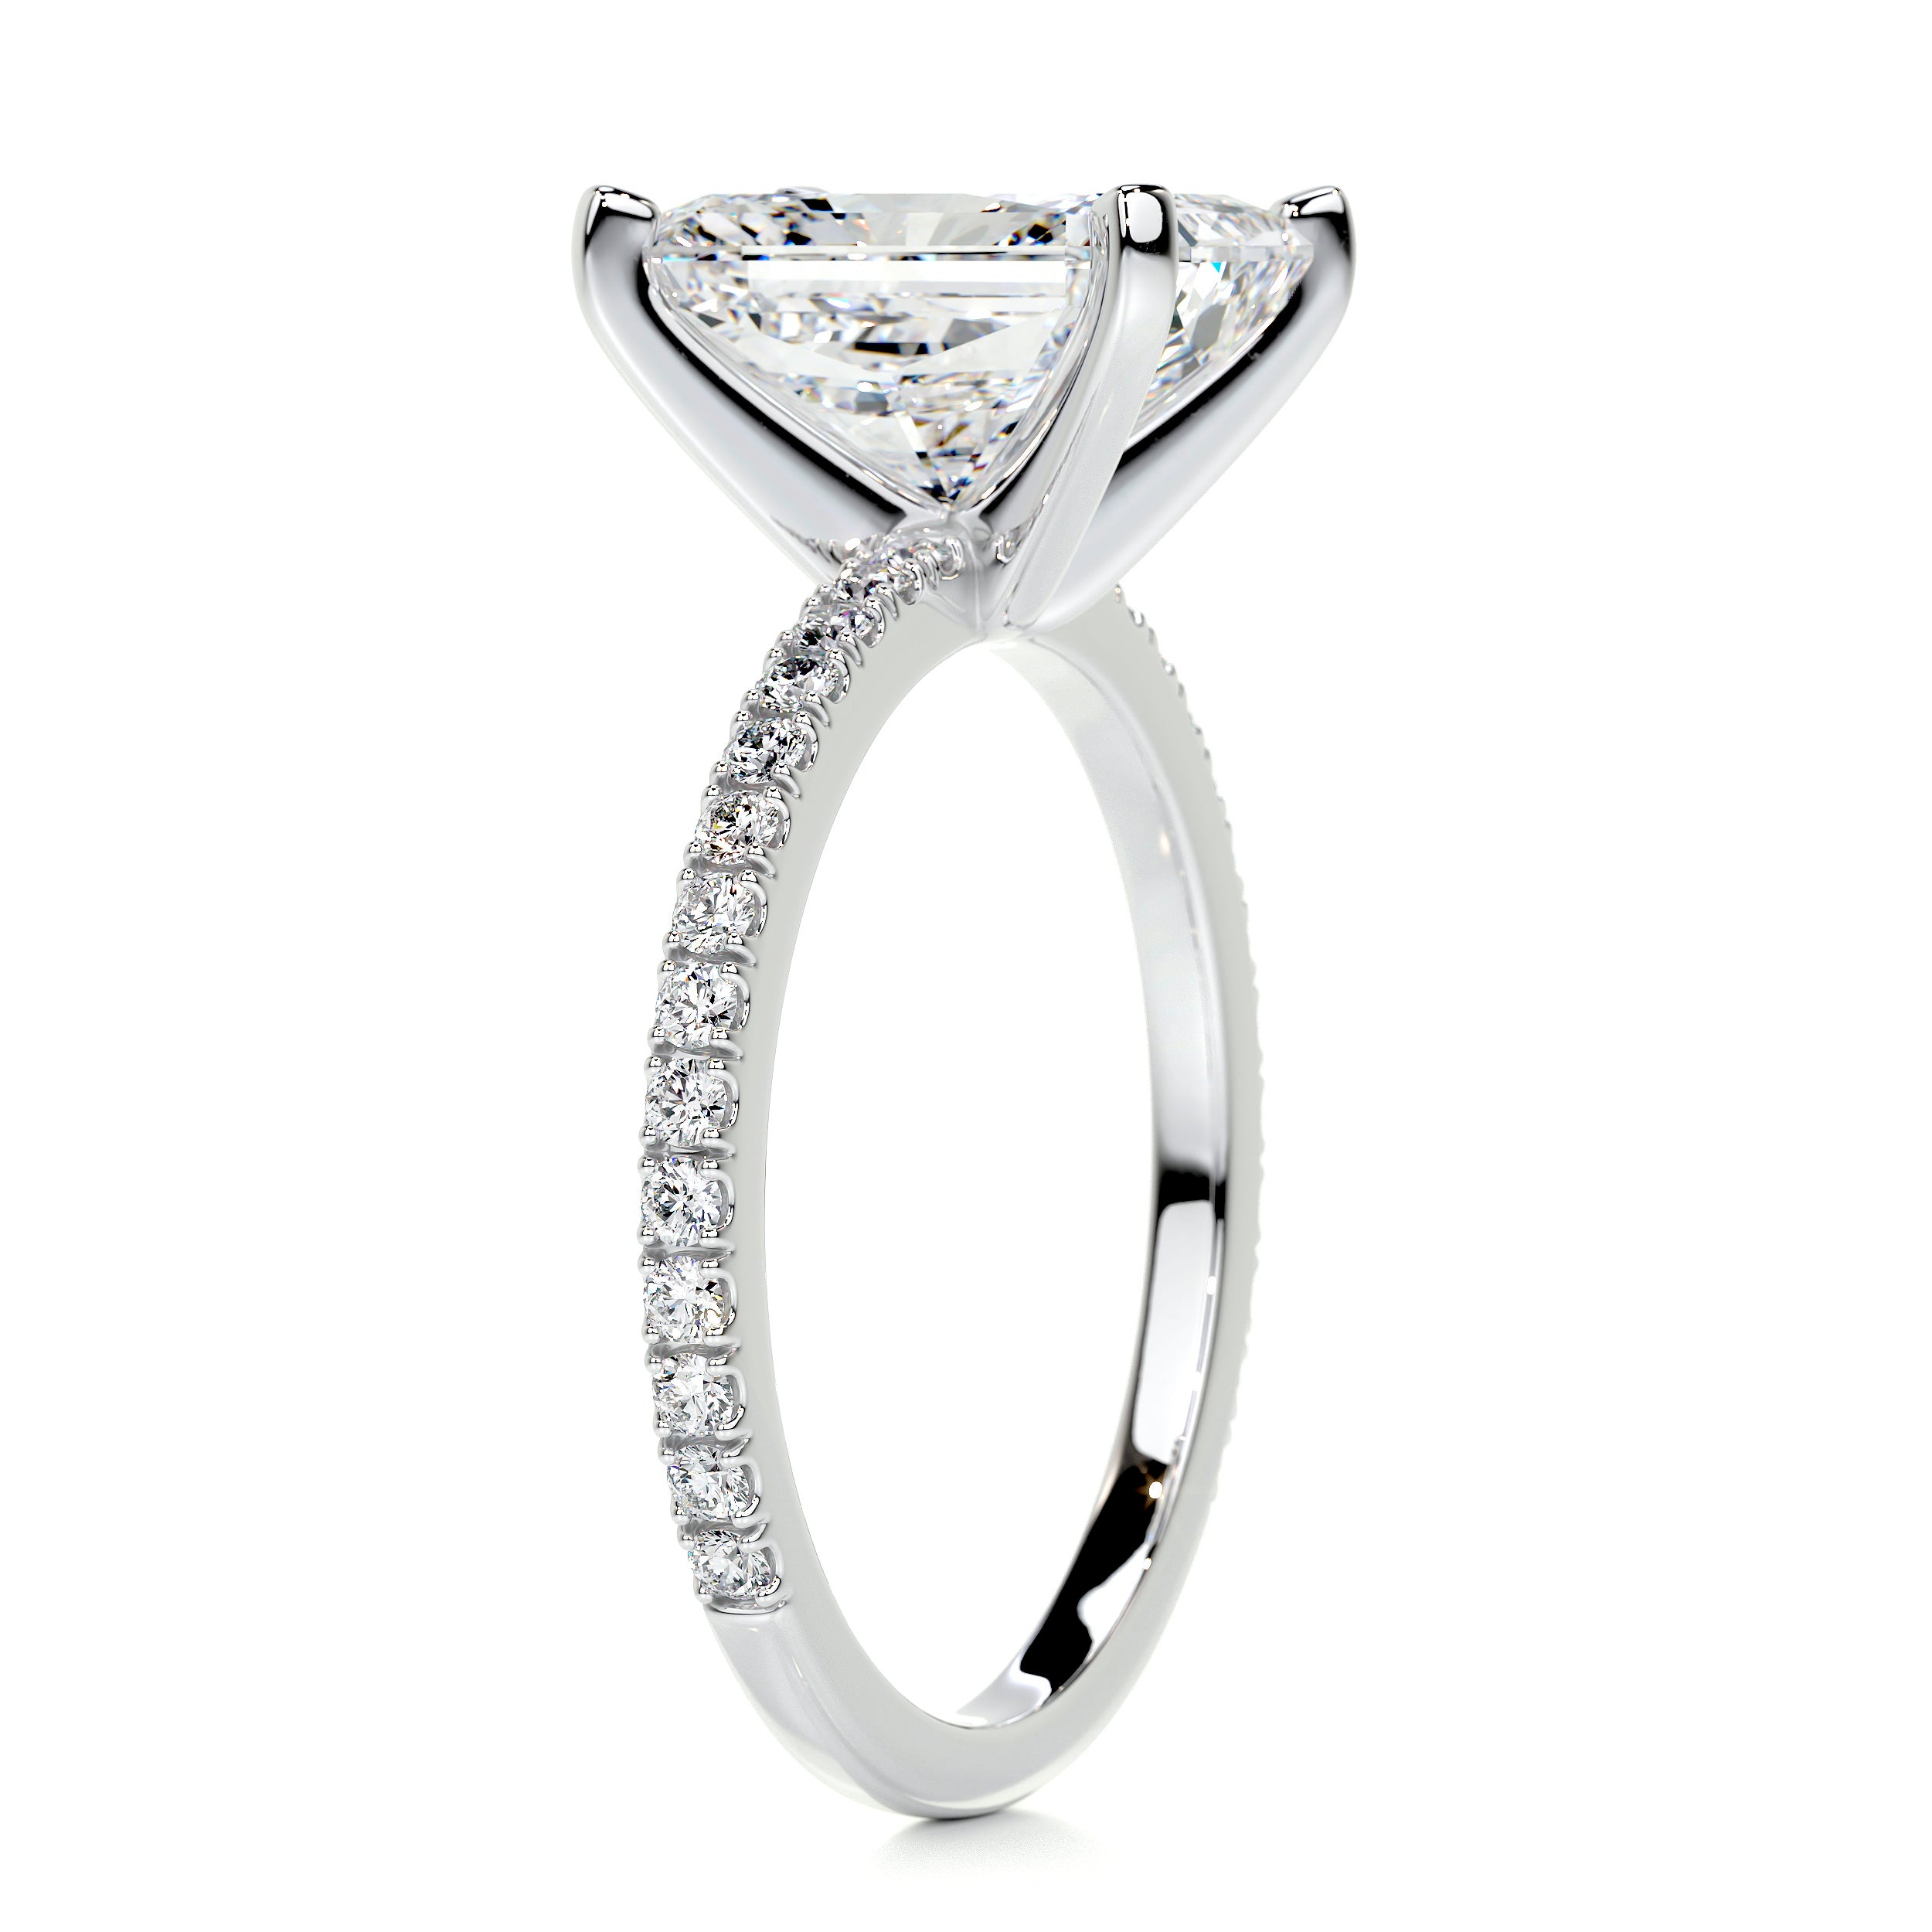 Audrey Diamond Engagement Ring   (3.5 Carat) -18K White Gold